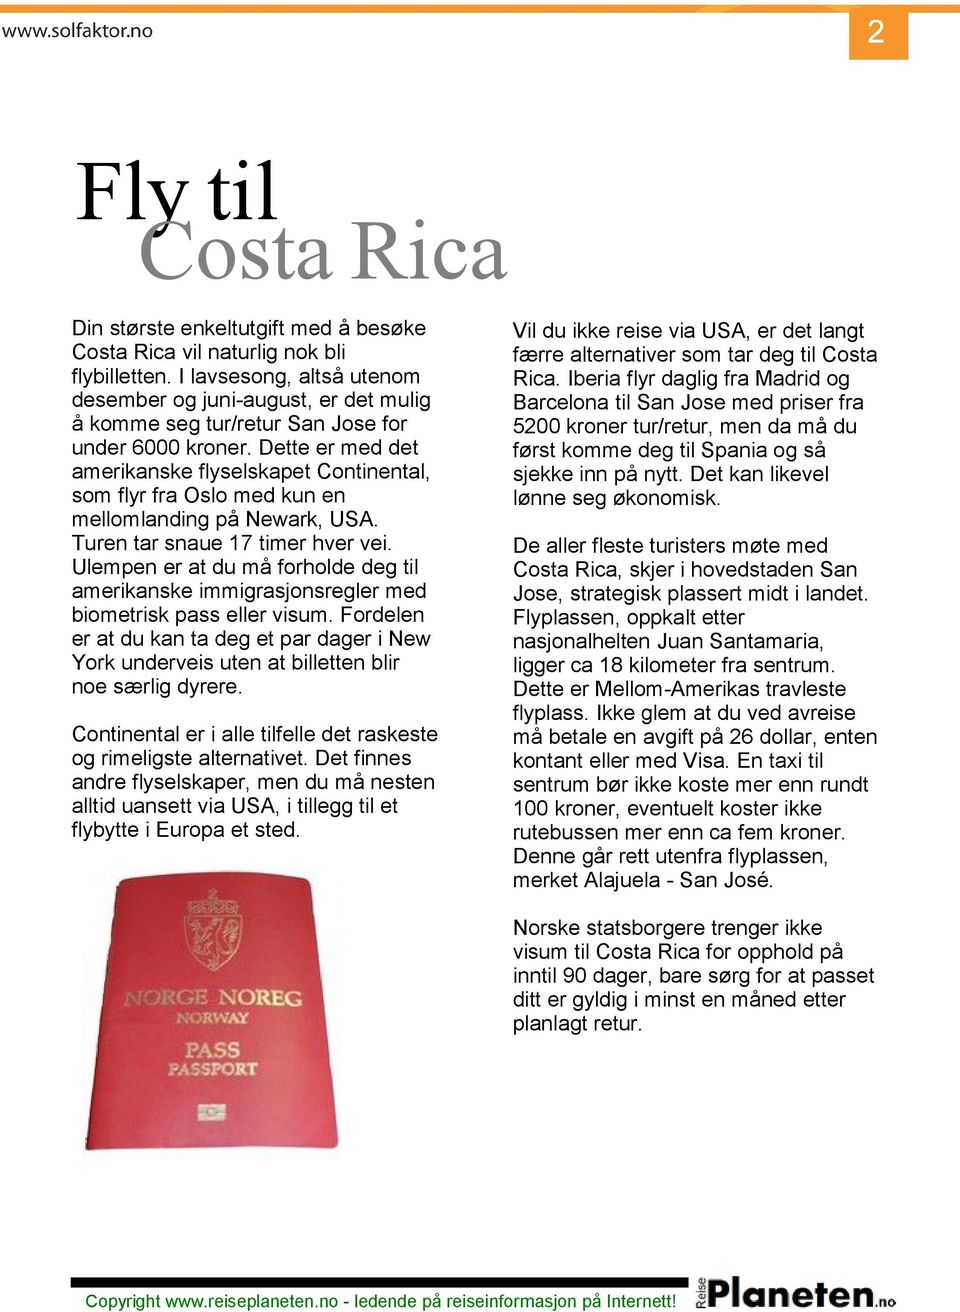 Ulempen er at du må forholde deg til amerikanske immigrasjonsregler med biometrisk pass eller visum.